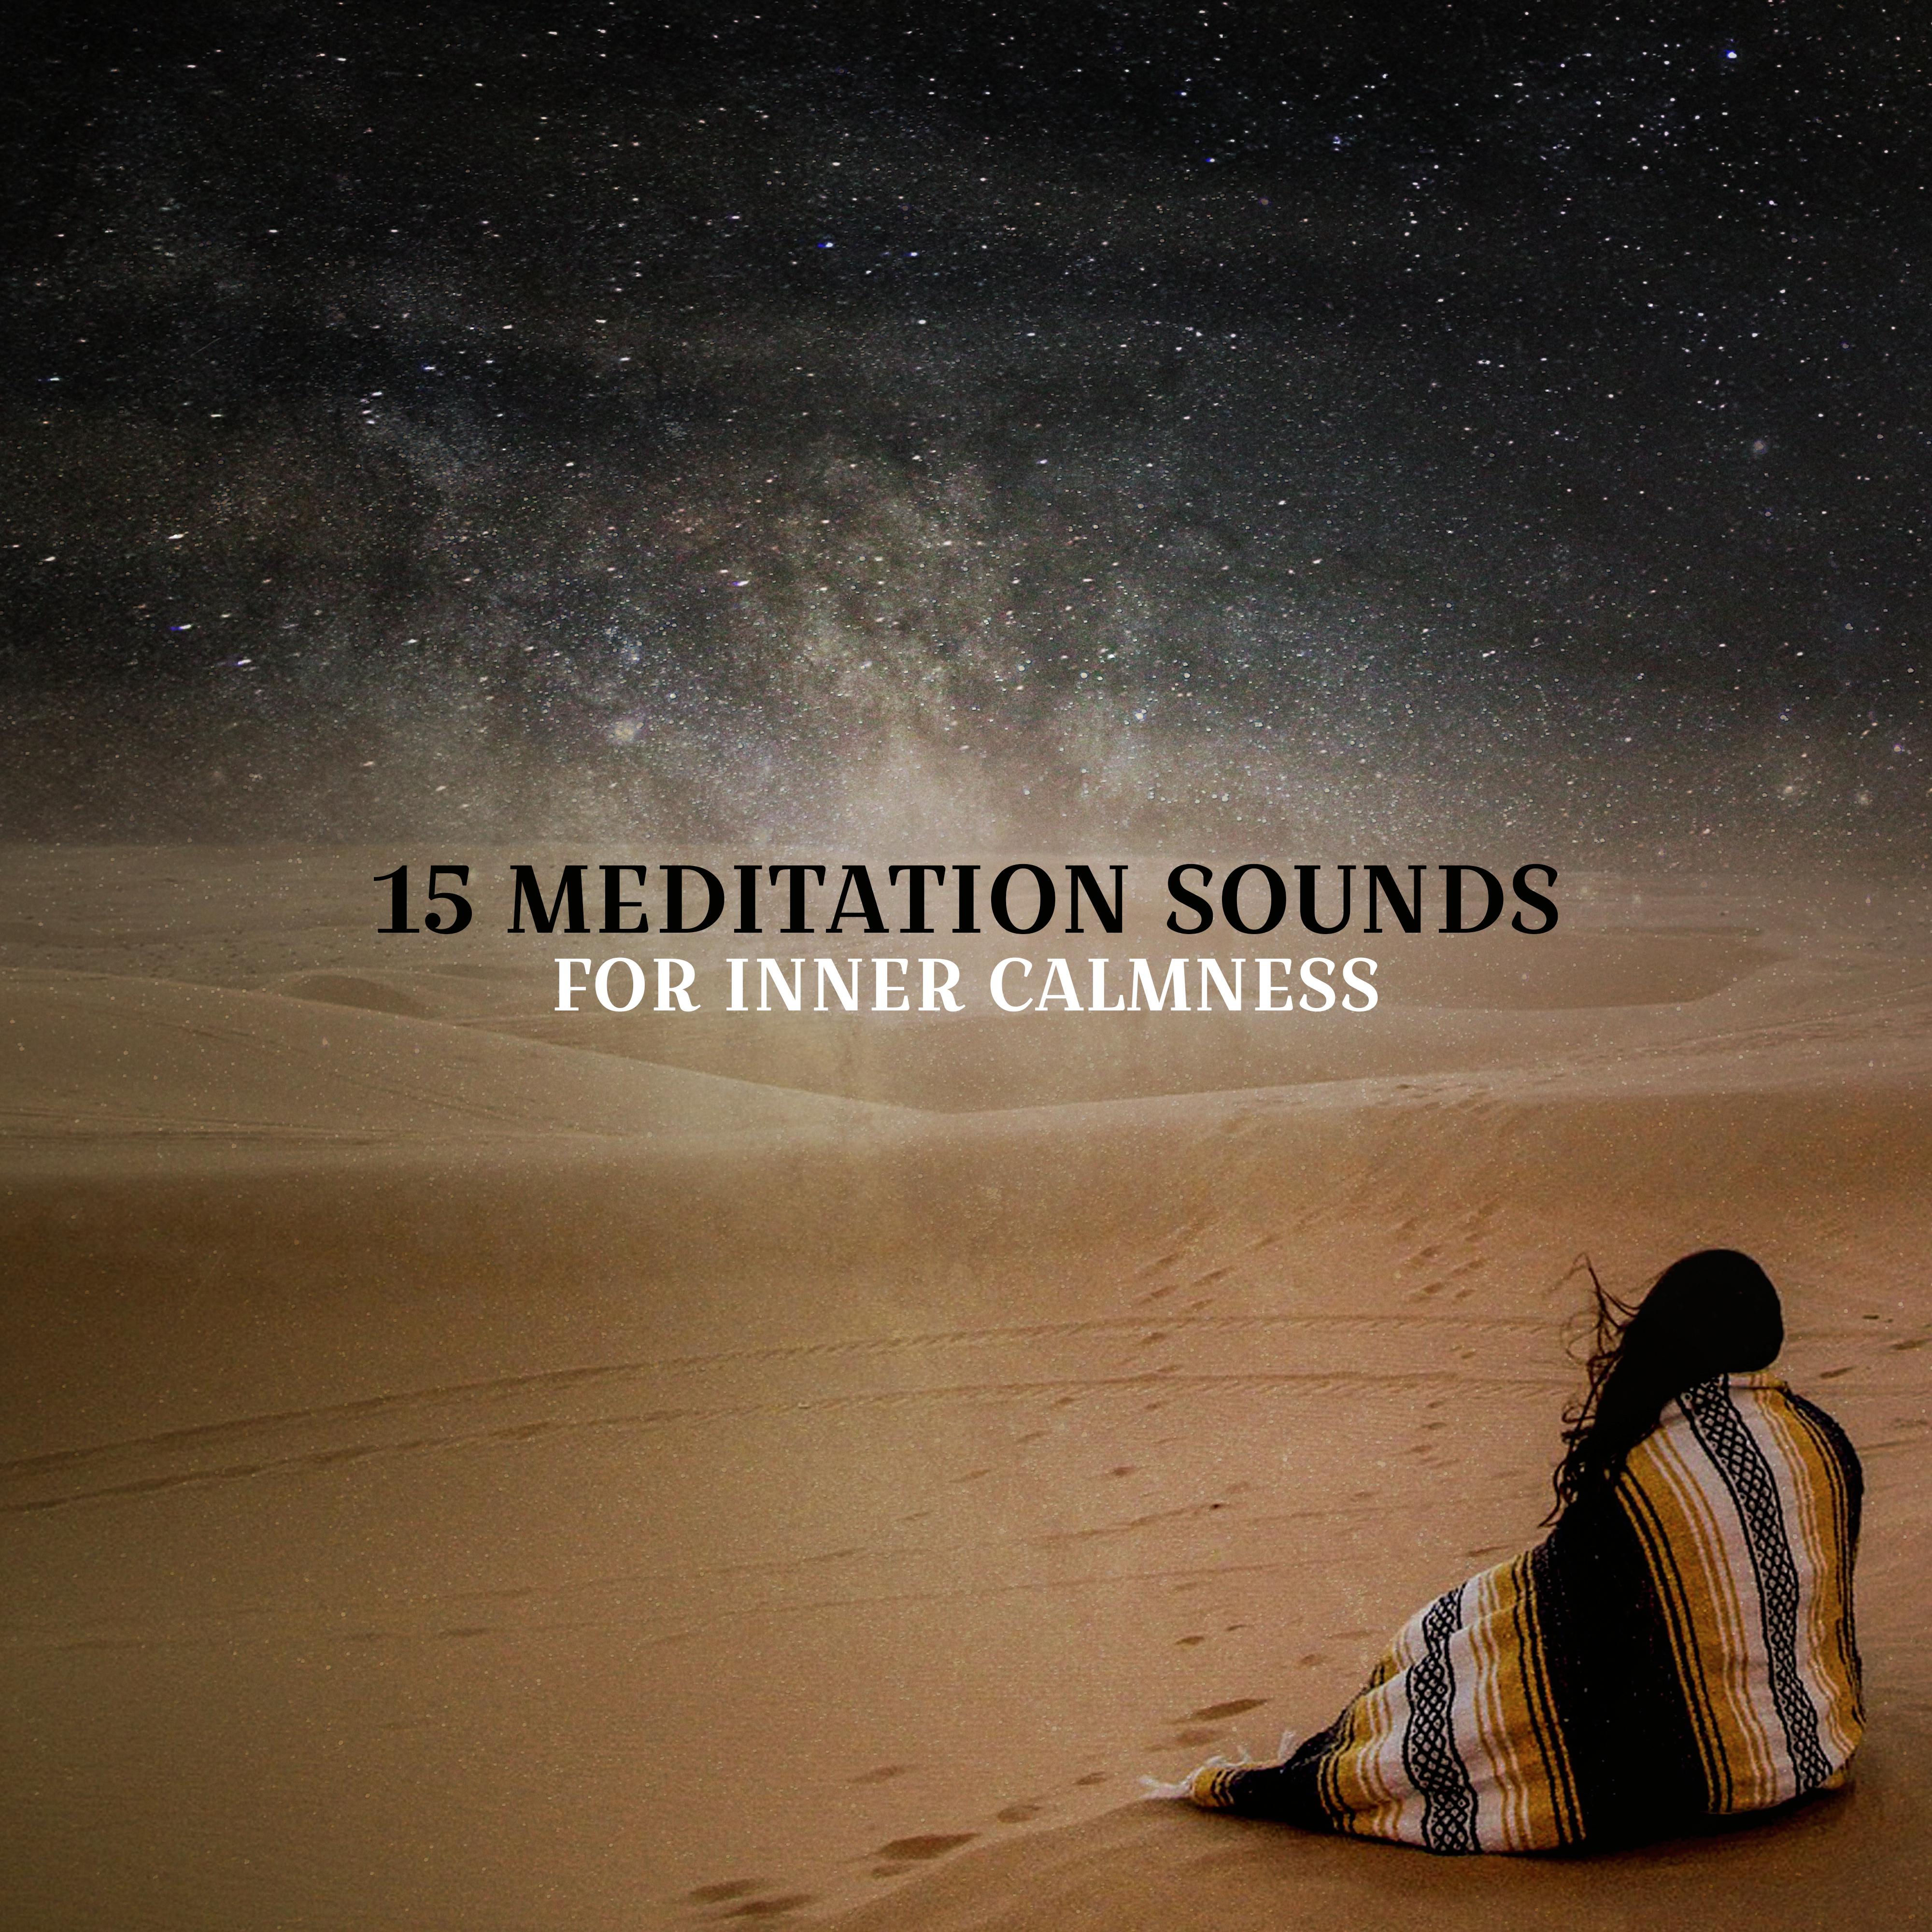 15 Meditation Sounds for Inner Calmness